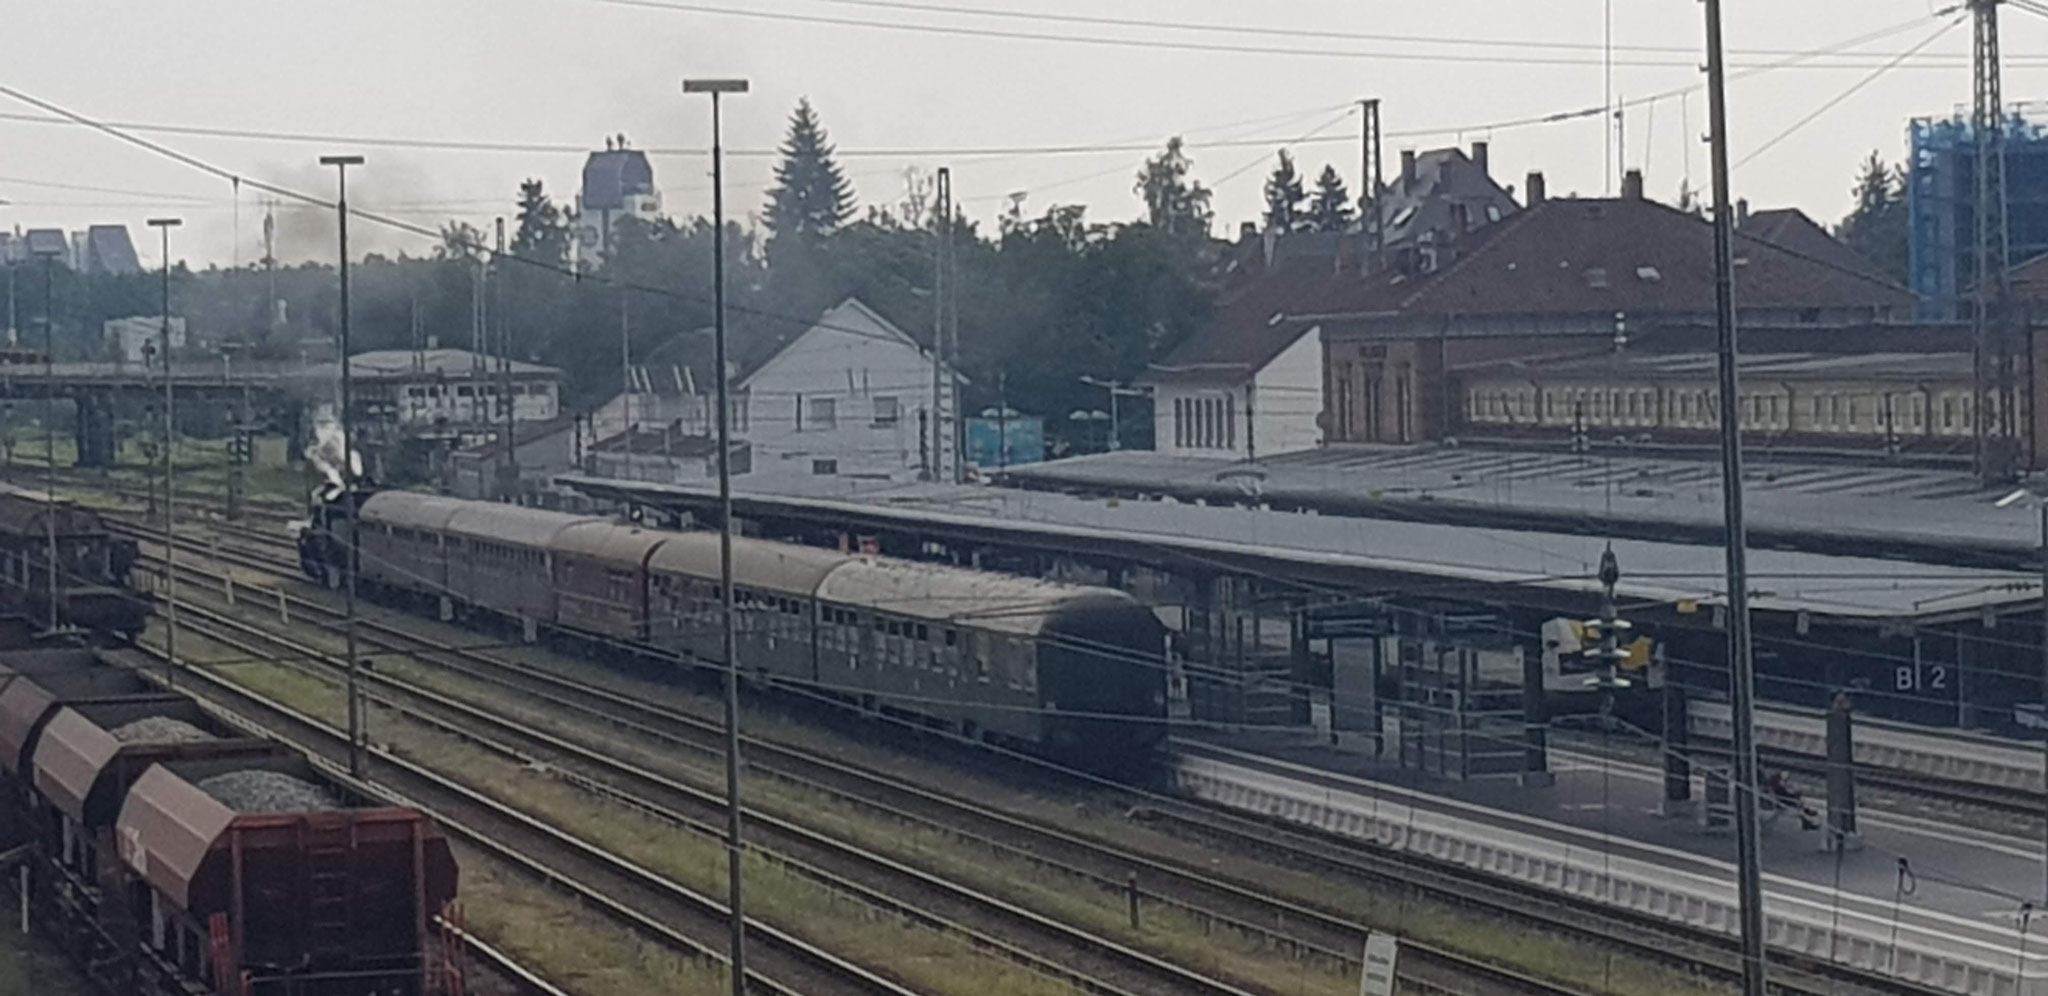 Villingen. Zoom auf Bahnhof mit Nostalgie-Dampfzug.